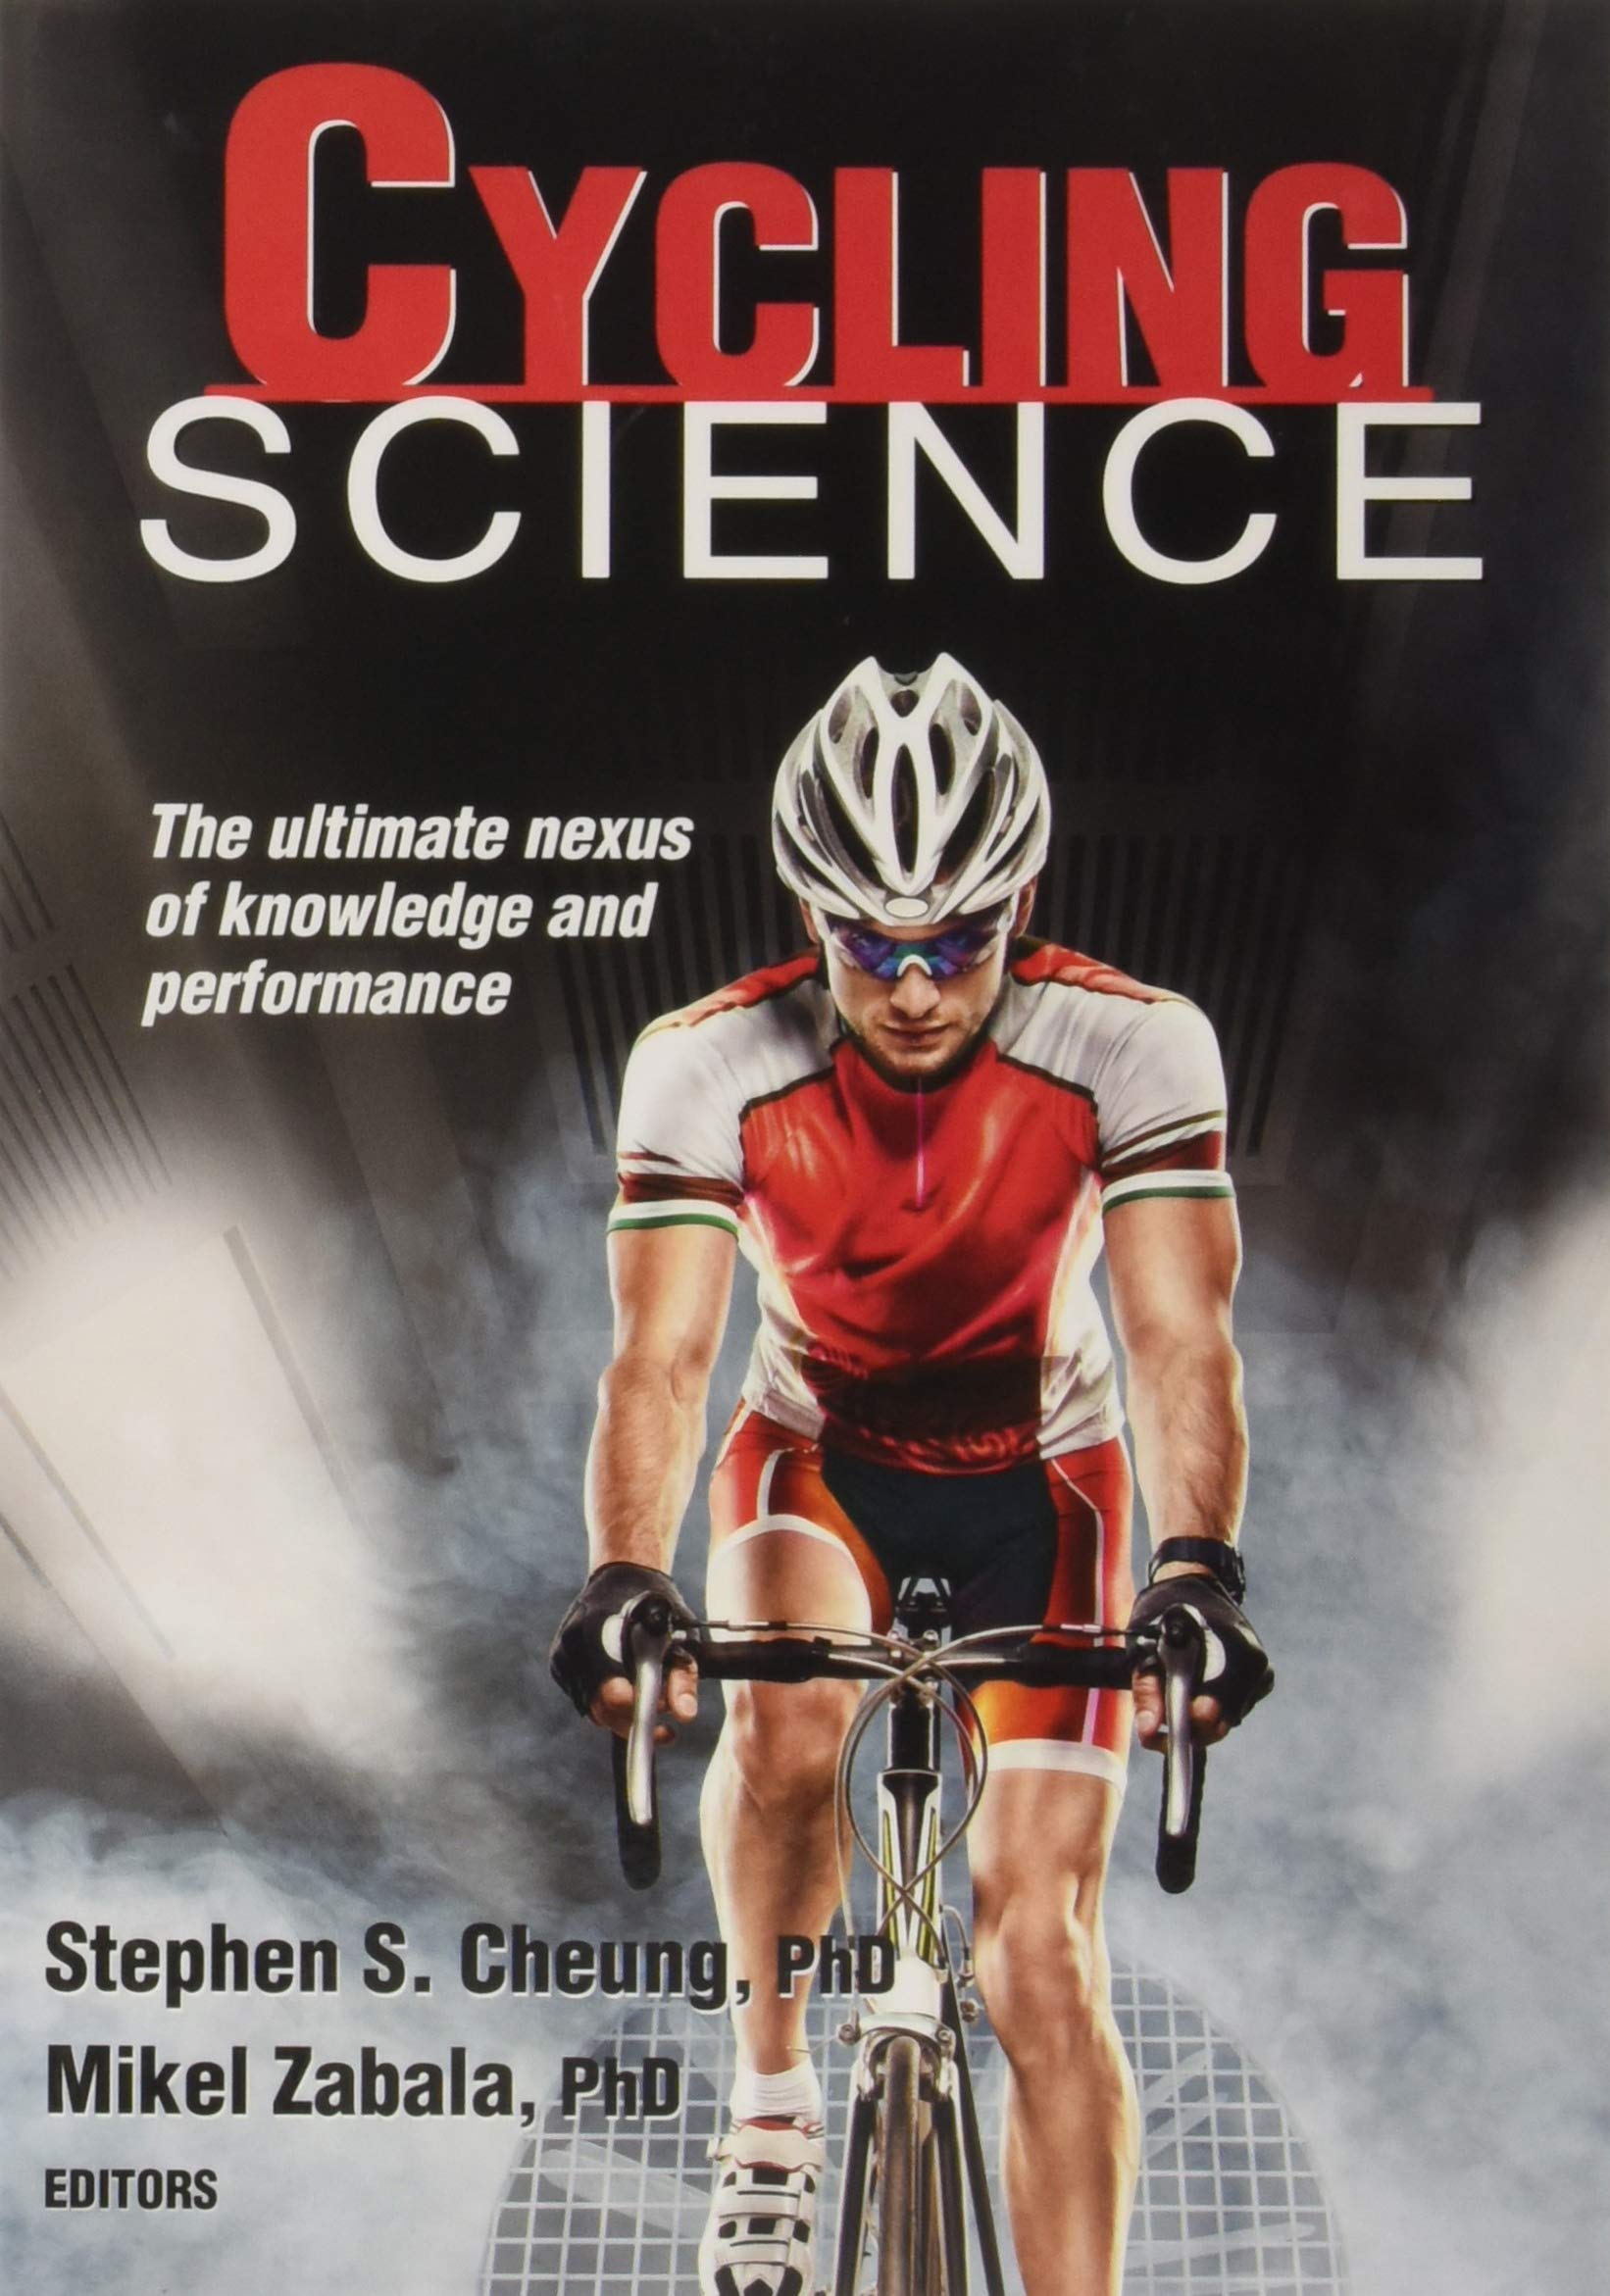 Imagen de portada del libro Cycling Science